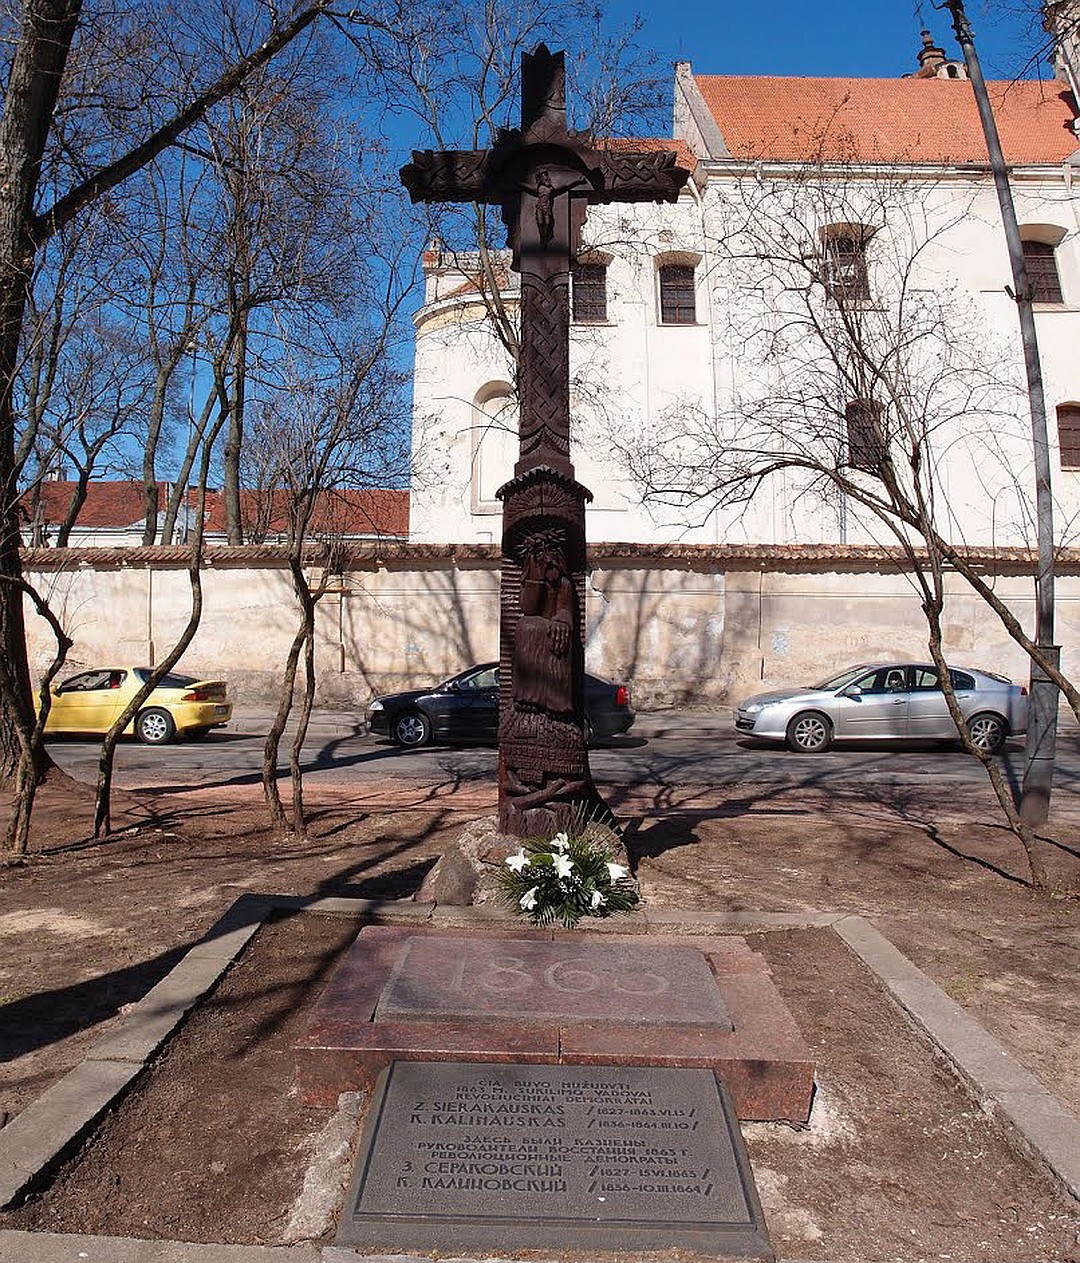 Кастусь Калиновский и другие руководители восстания были казнены в Вильно на Лукишской площади